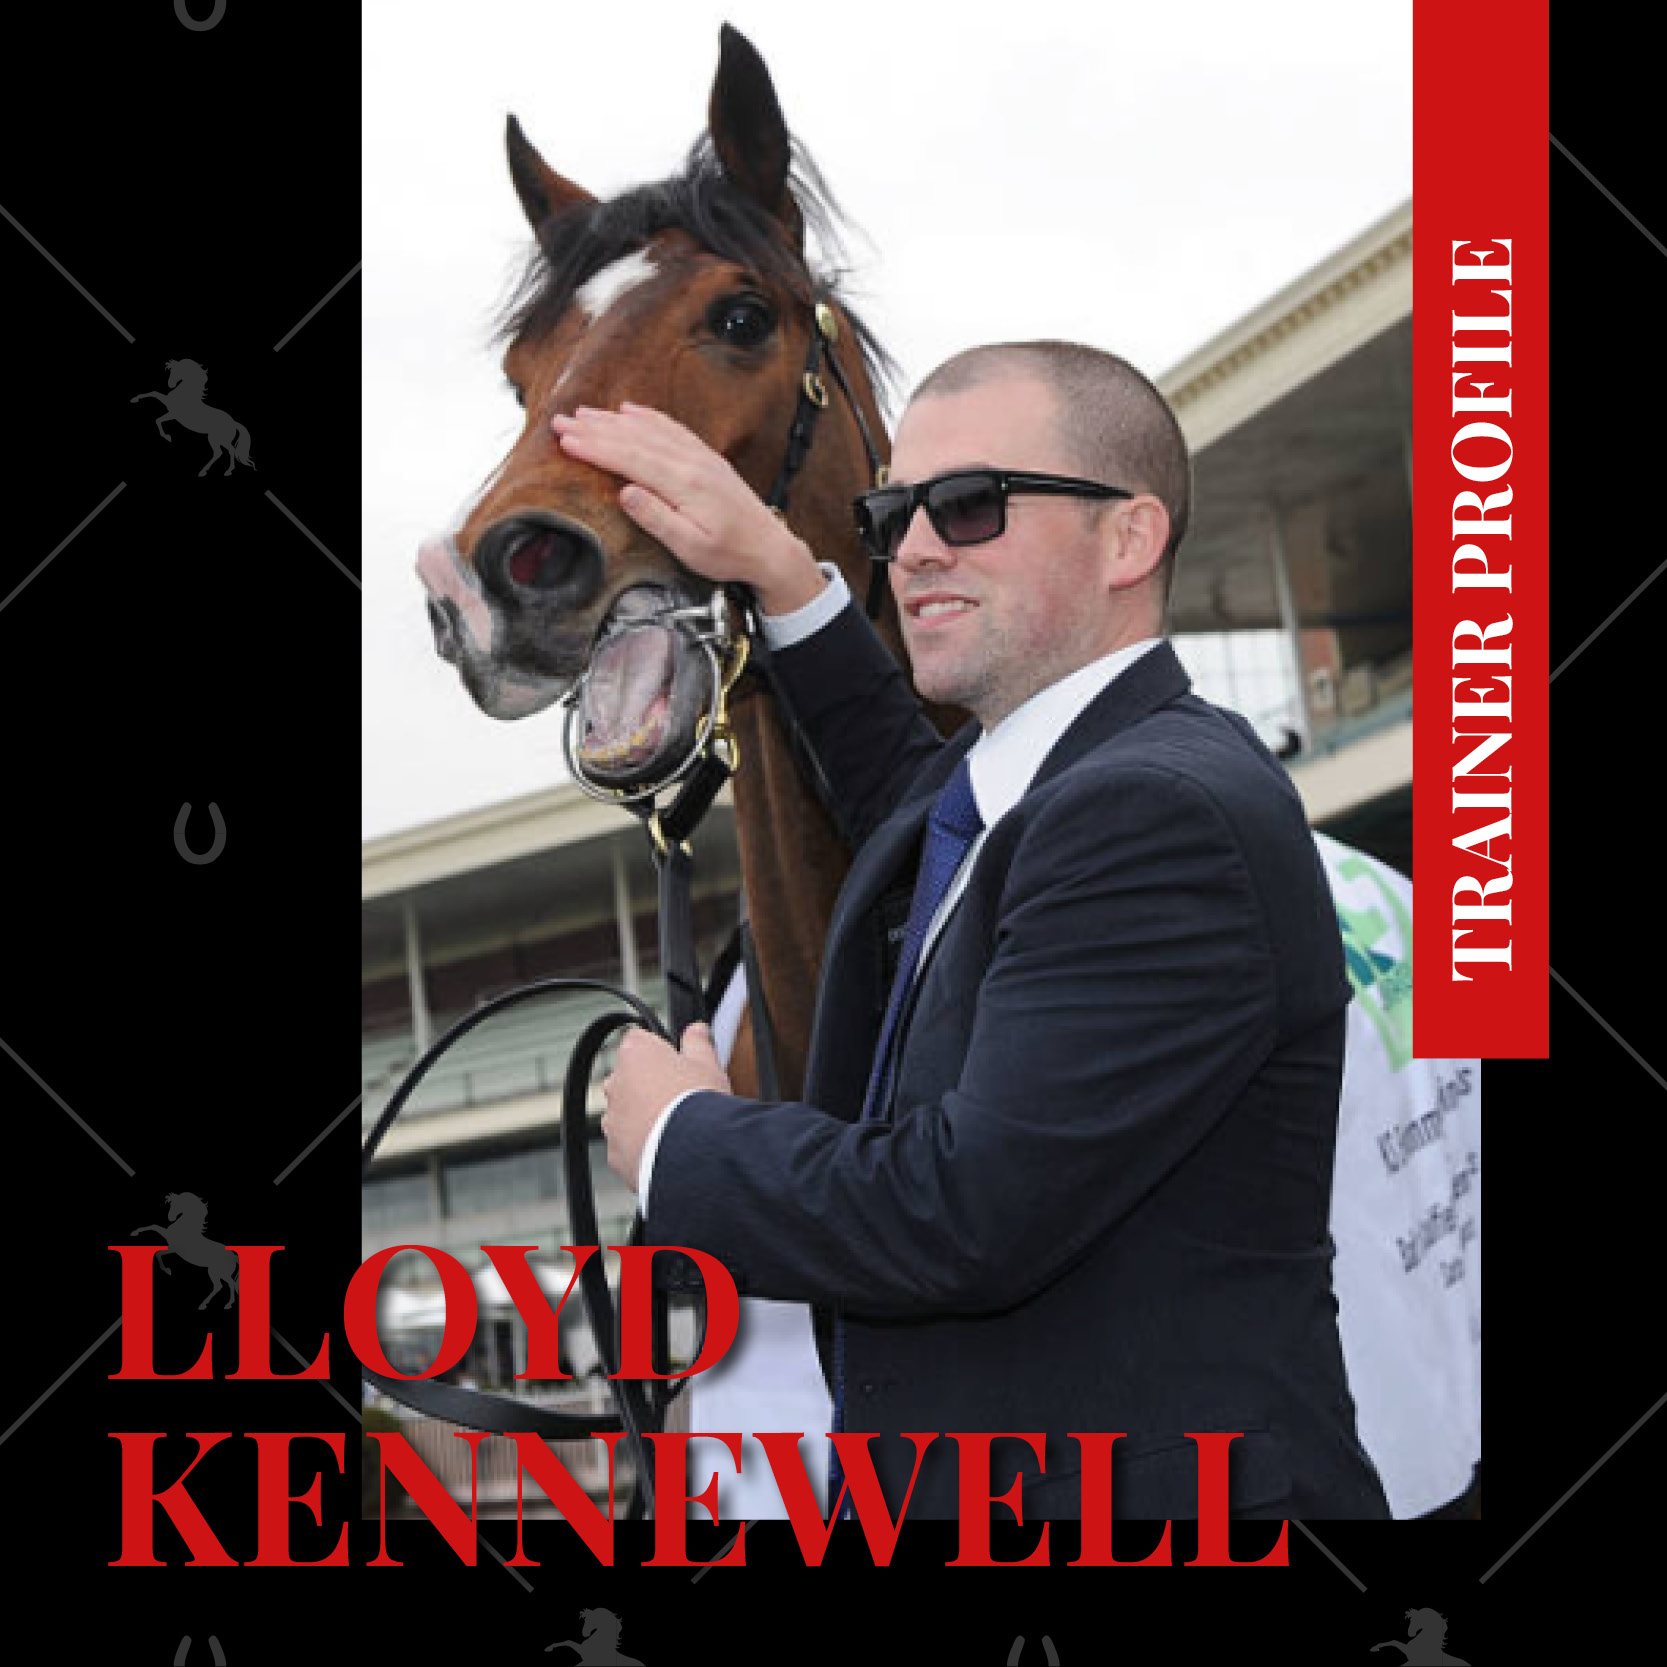 Trainer Profile – Lloyd Kennewell